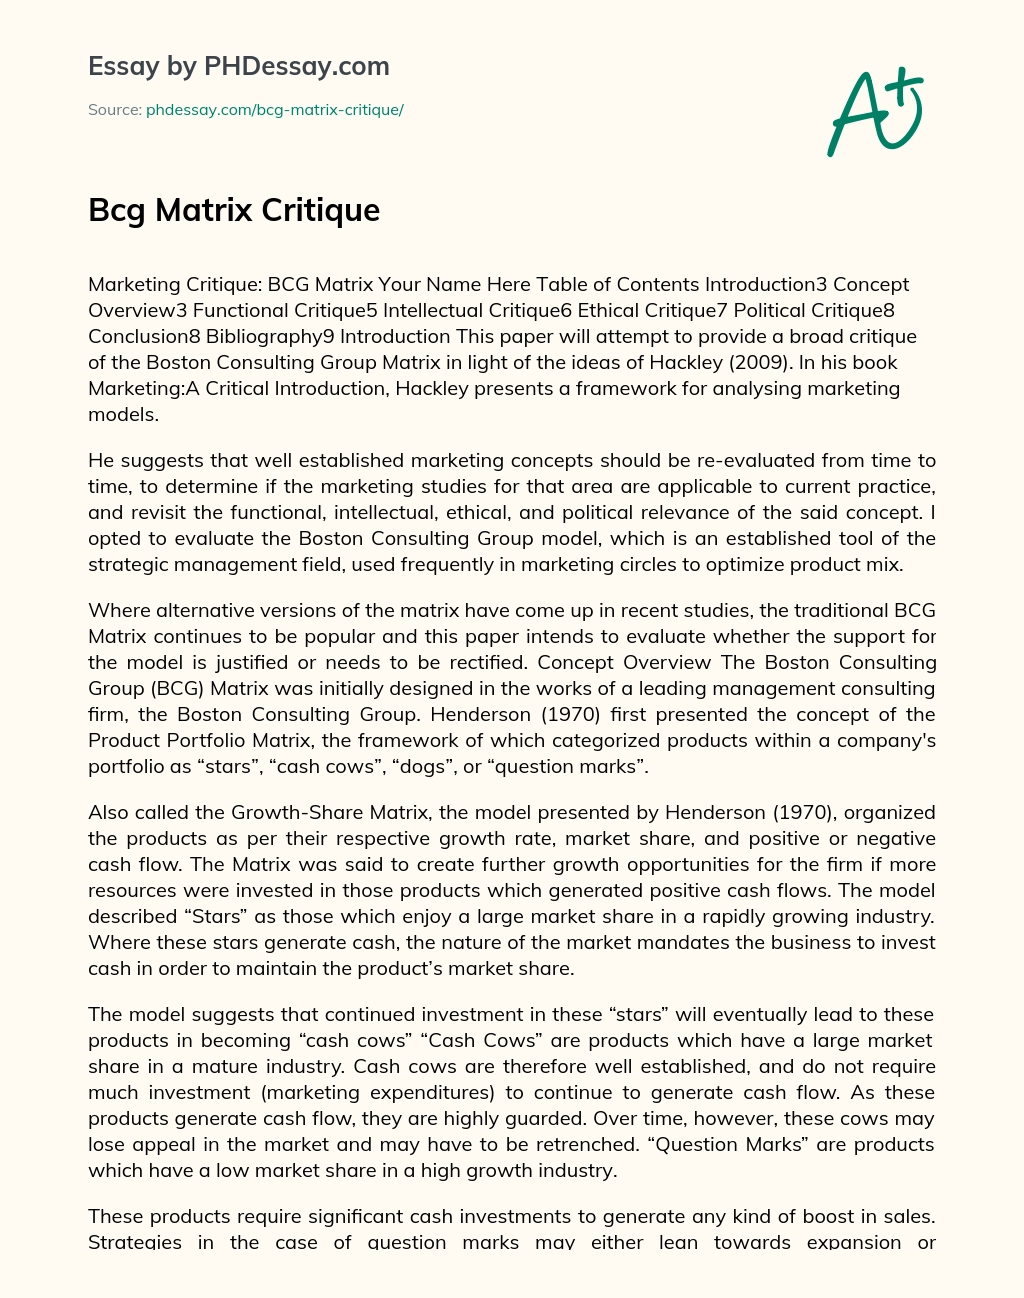 Bcg Matrix Critique essay